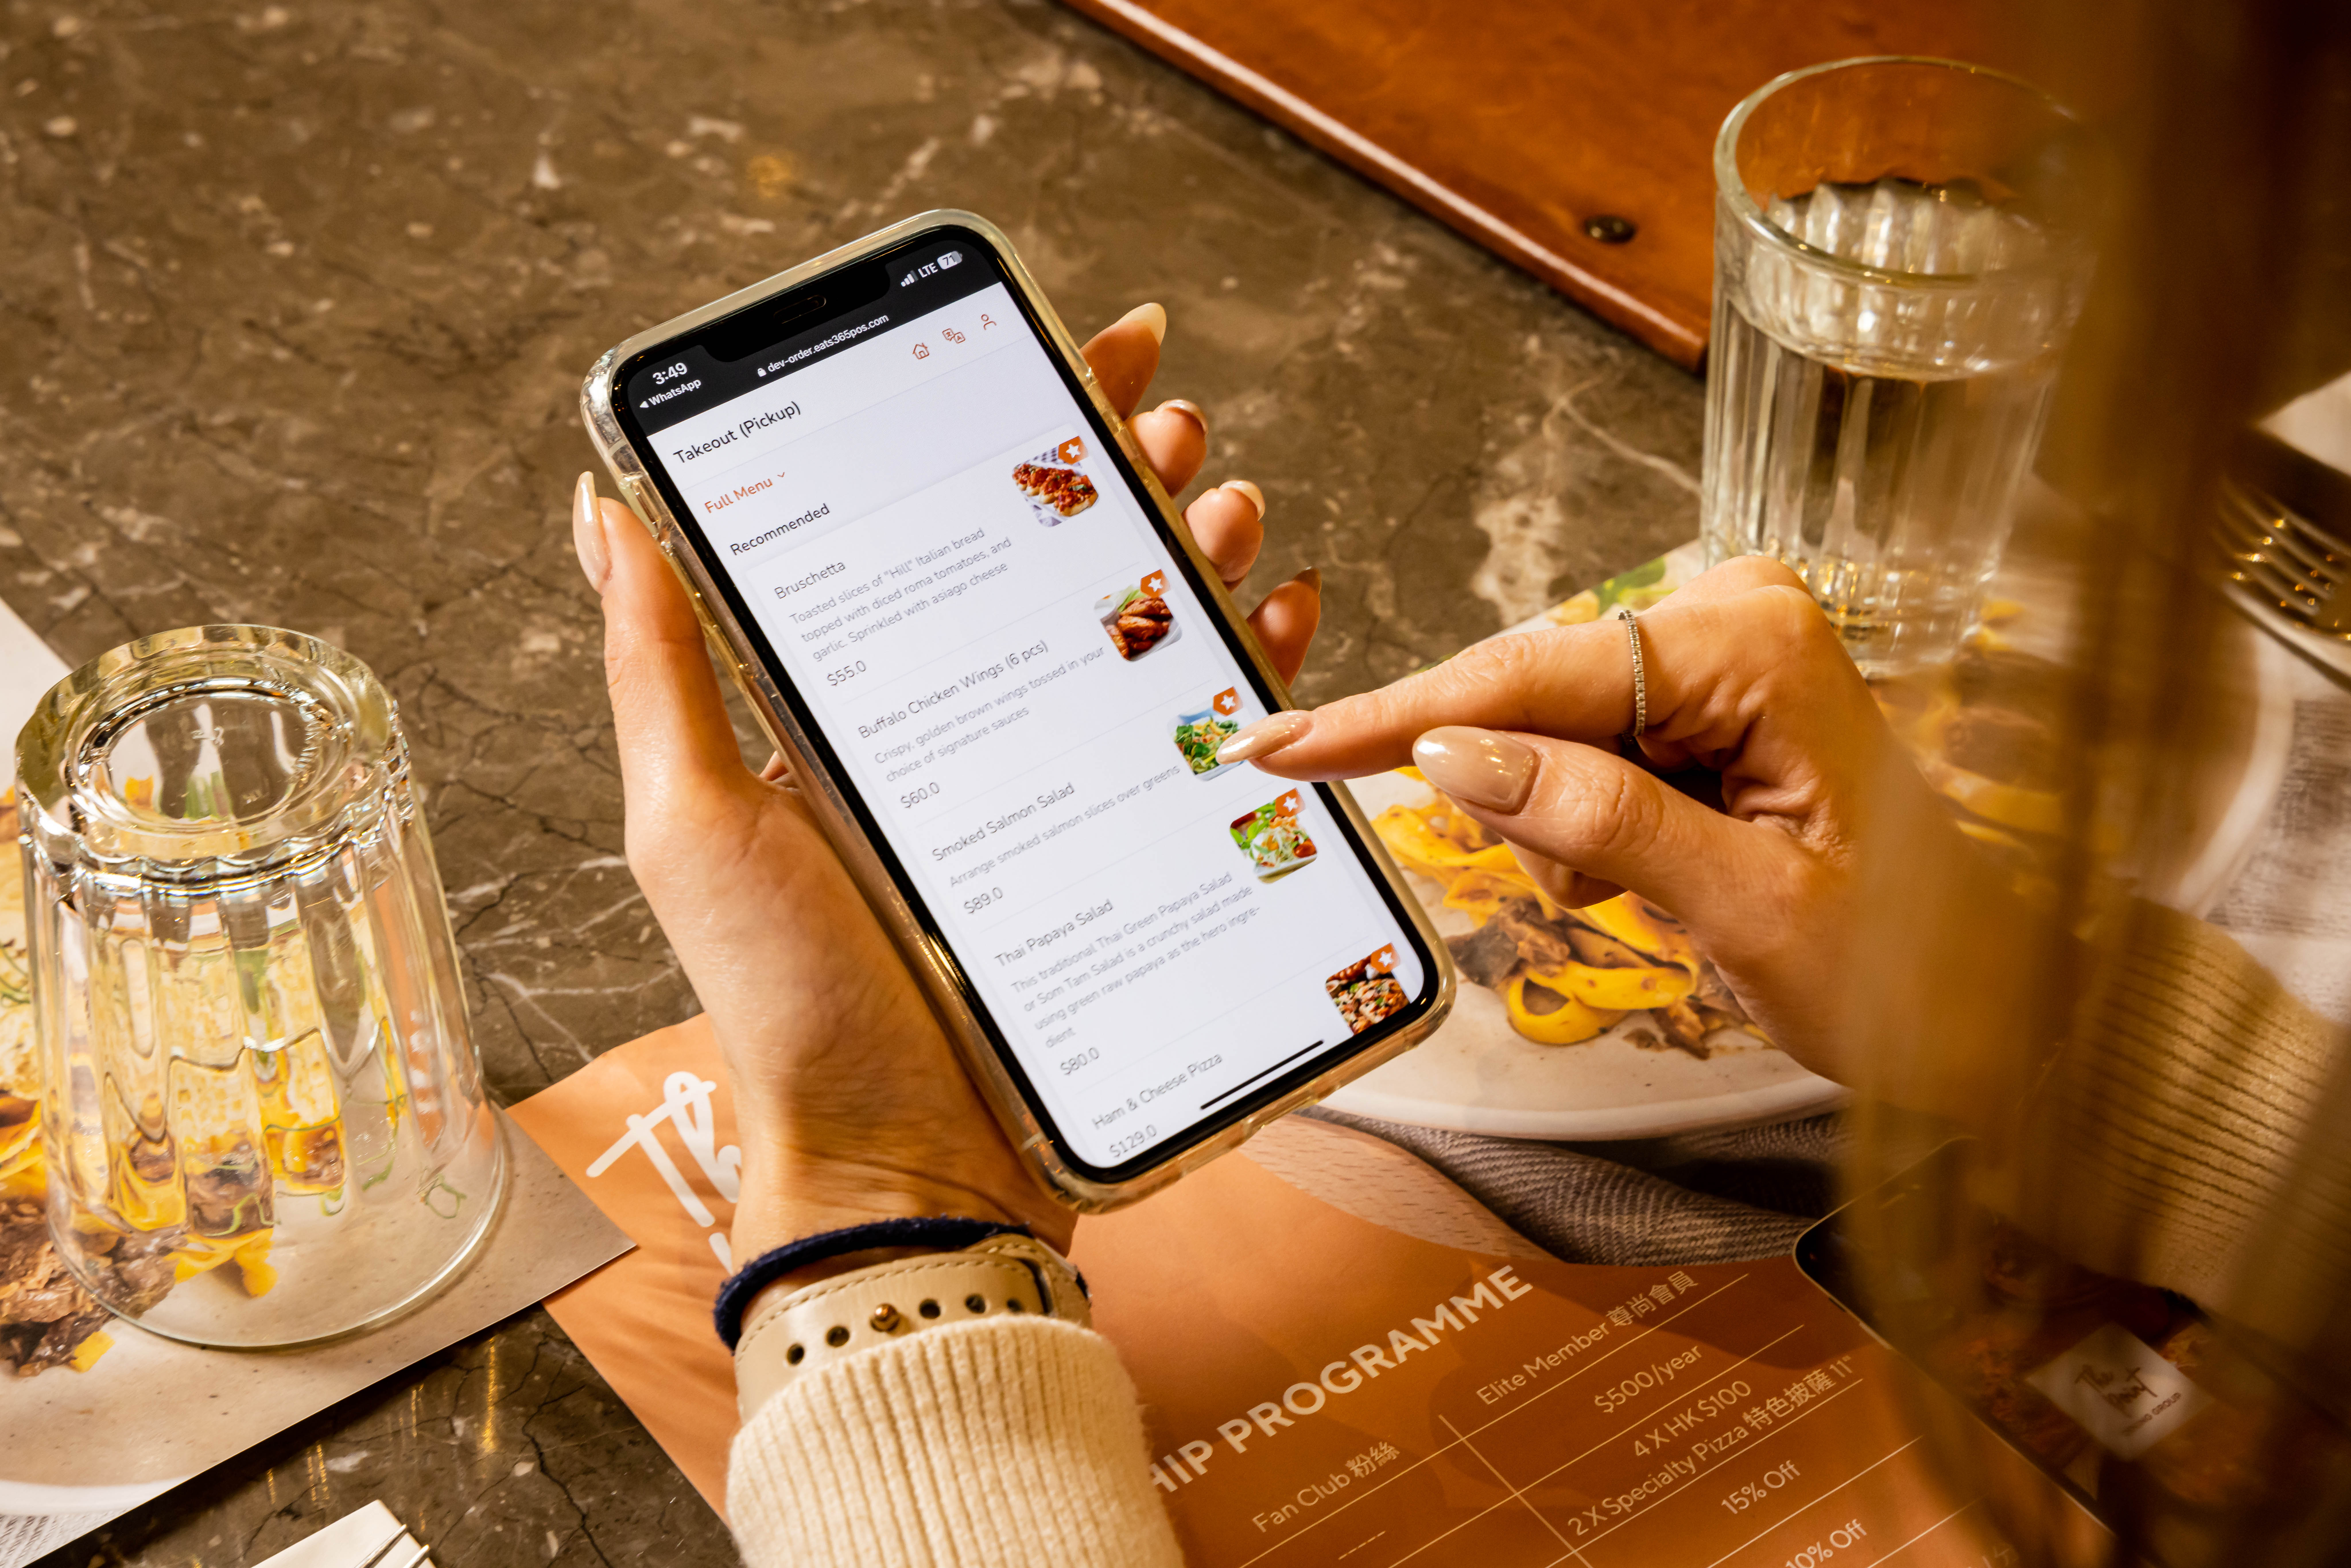 顧客正在使用Eats365 掃碼點餐功能，閱讀餐單照片與菜色說明並線上點餐